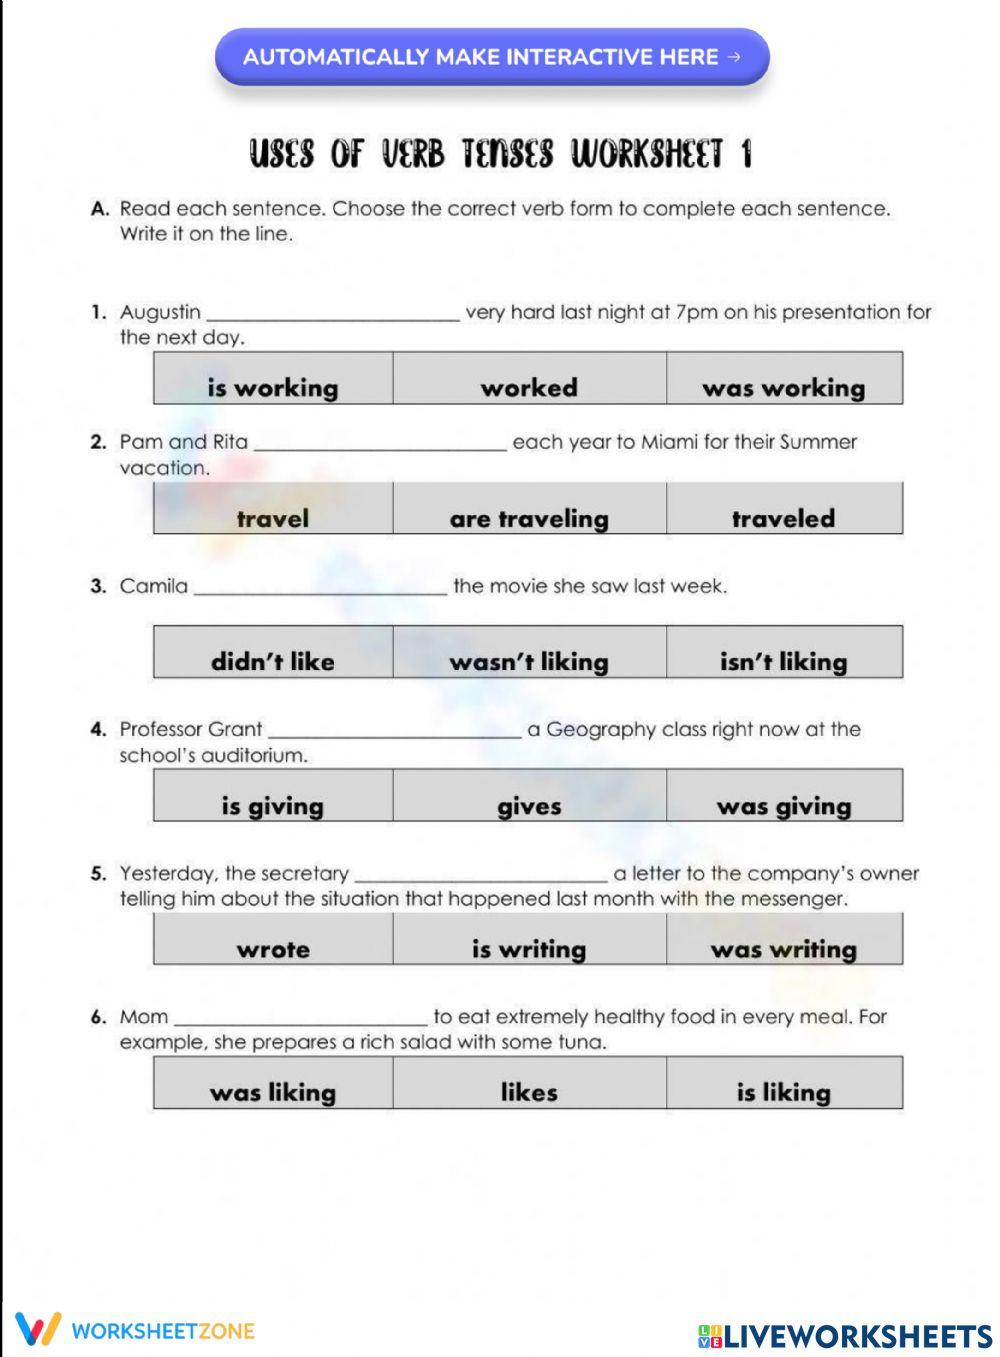 Uses of Verb Tenses Worksheet 1